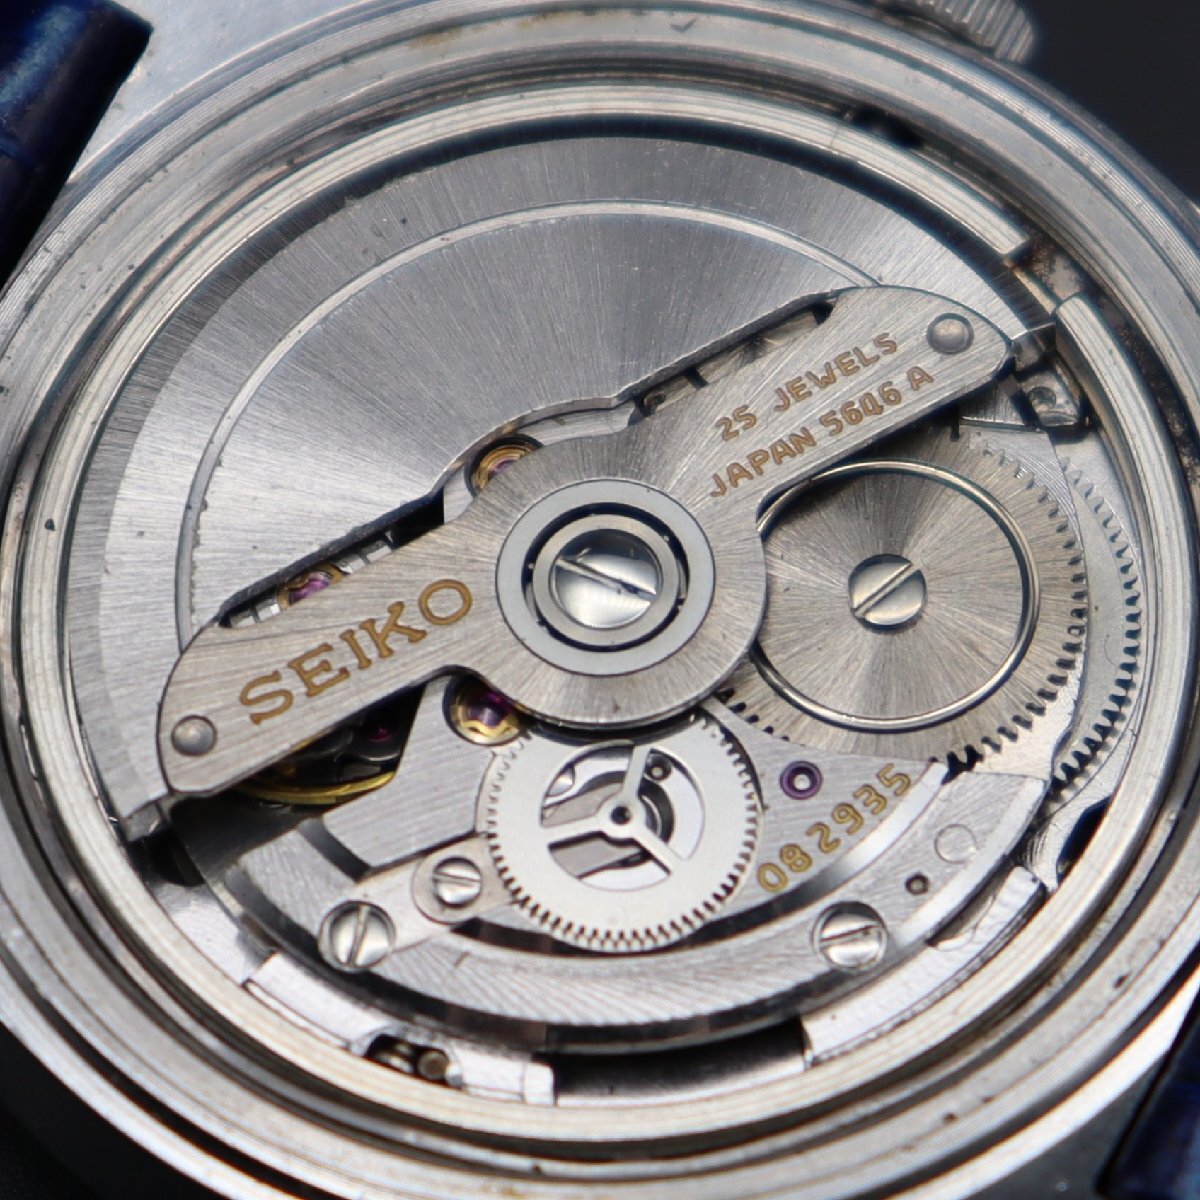 SEIKO 56GS HI-BEAT グランドセイコー ハイビート 5646-7010 自動巻き 25石 1971年製 諏訪工場 GSメダリオン 日/英デイデイト メンズ腕時計の画像7